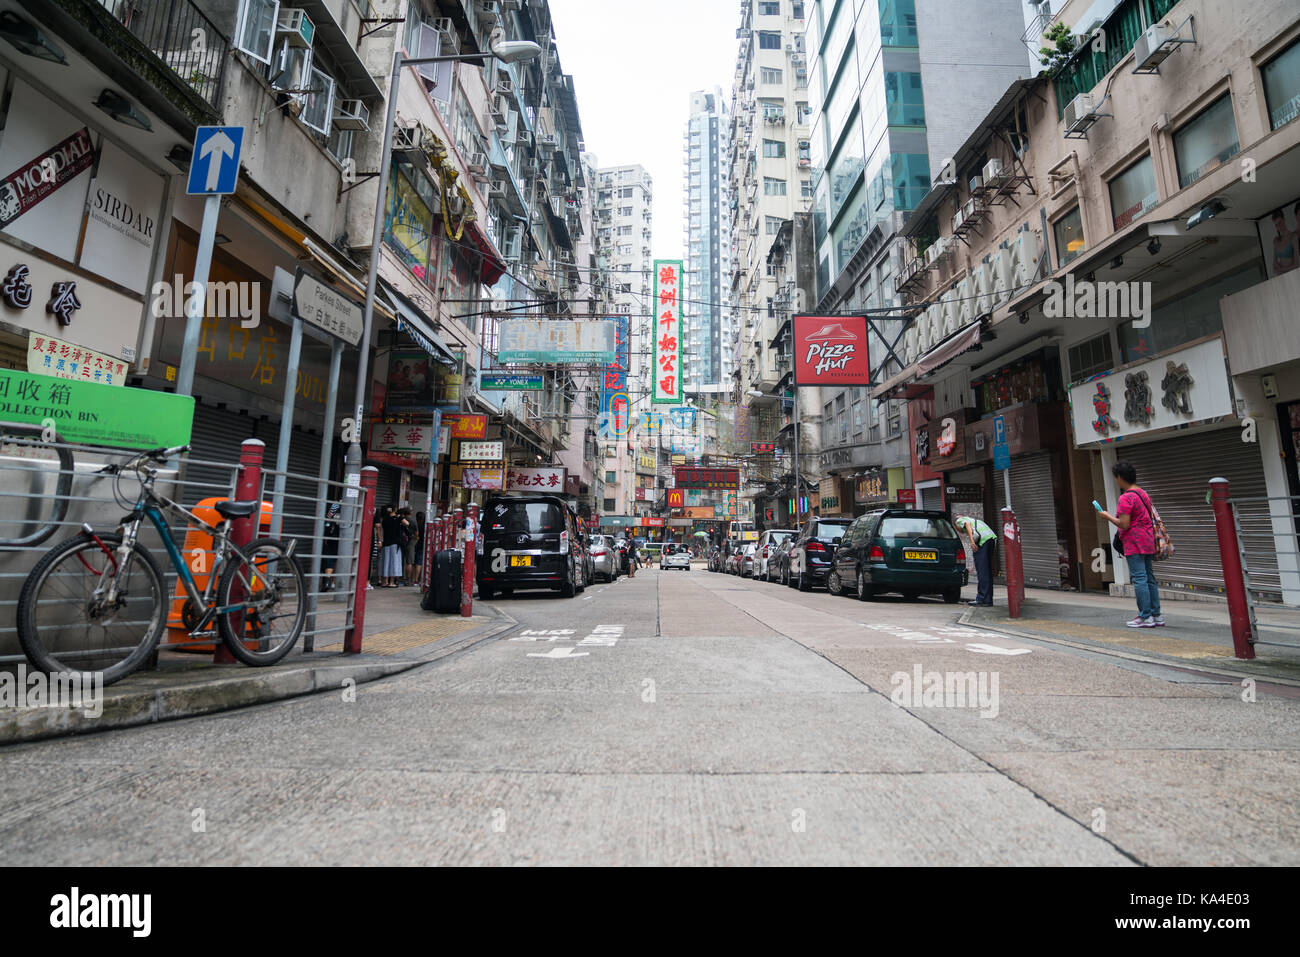 Hong kong, asia - agosto 2, 2017; street scene tipicamente asiatico con edifici alti lungo entrambi i lati e la pletora di segni al neon di hong kong Foto Stock